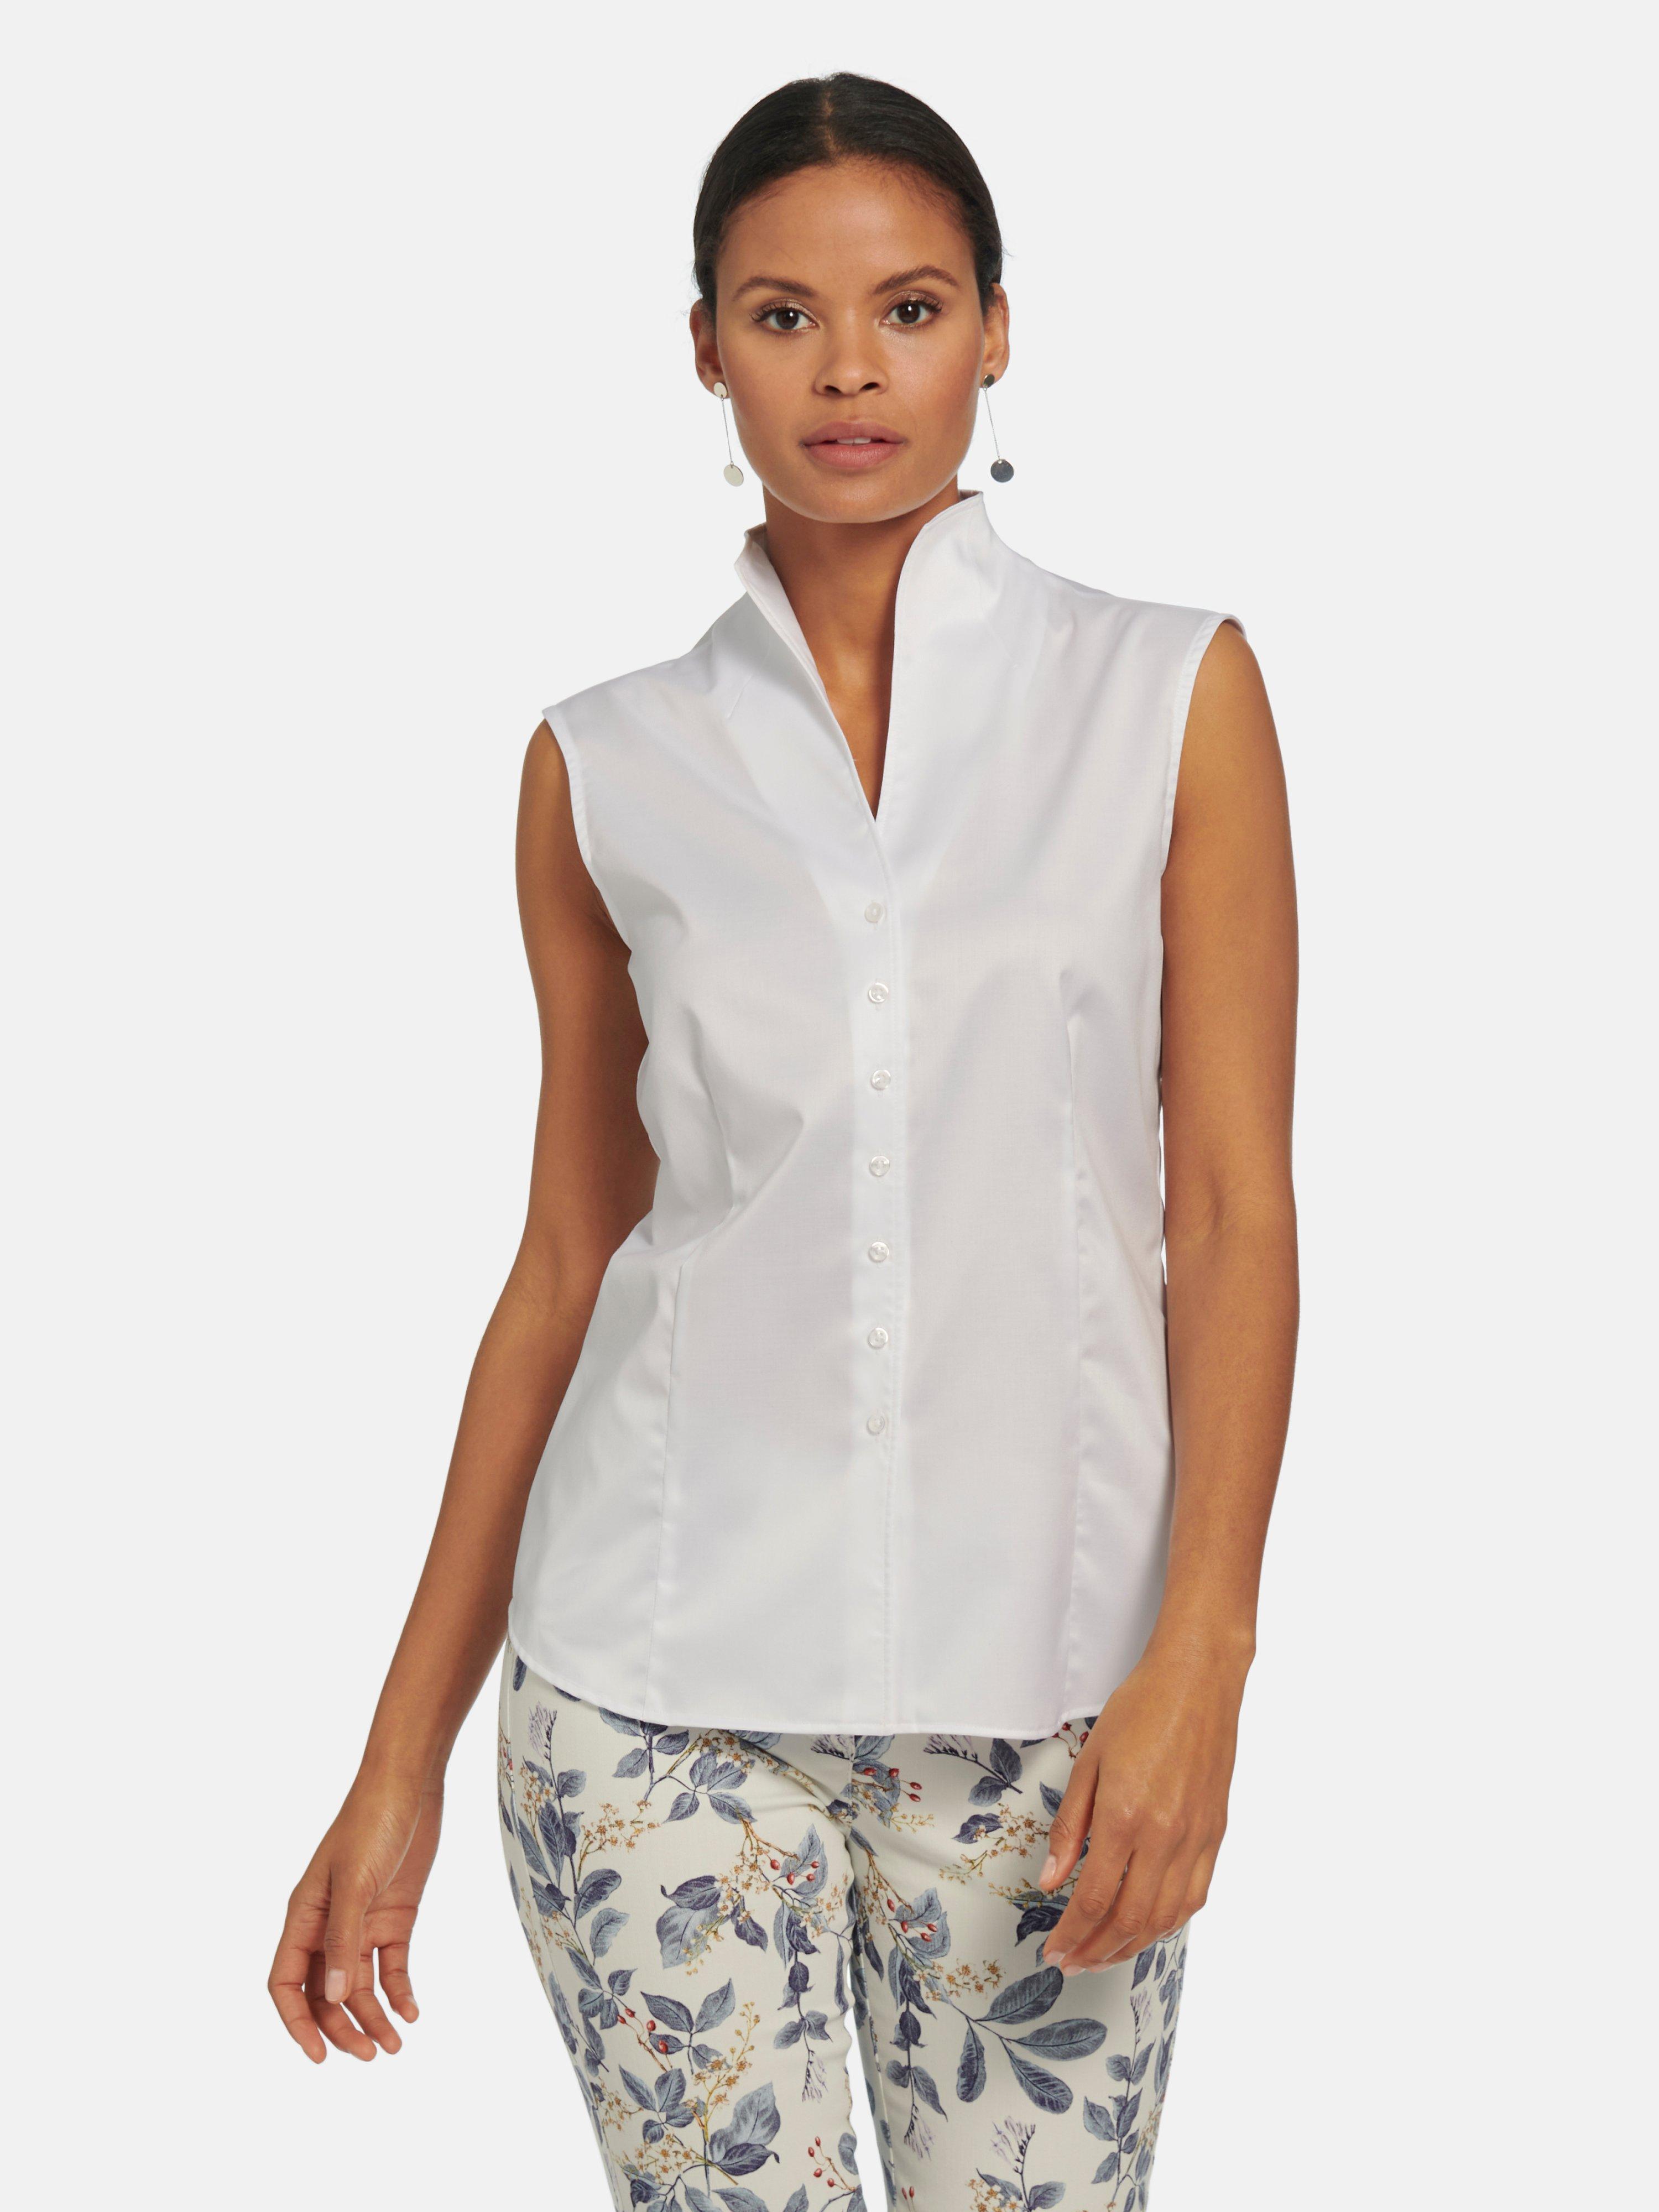 Bezighouden Onderzoek Handig Eterna - Mouwloze blouse van 100% katoen - wit